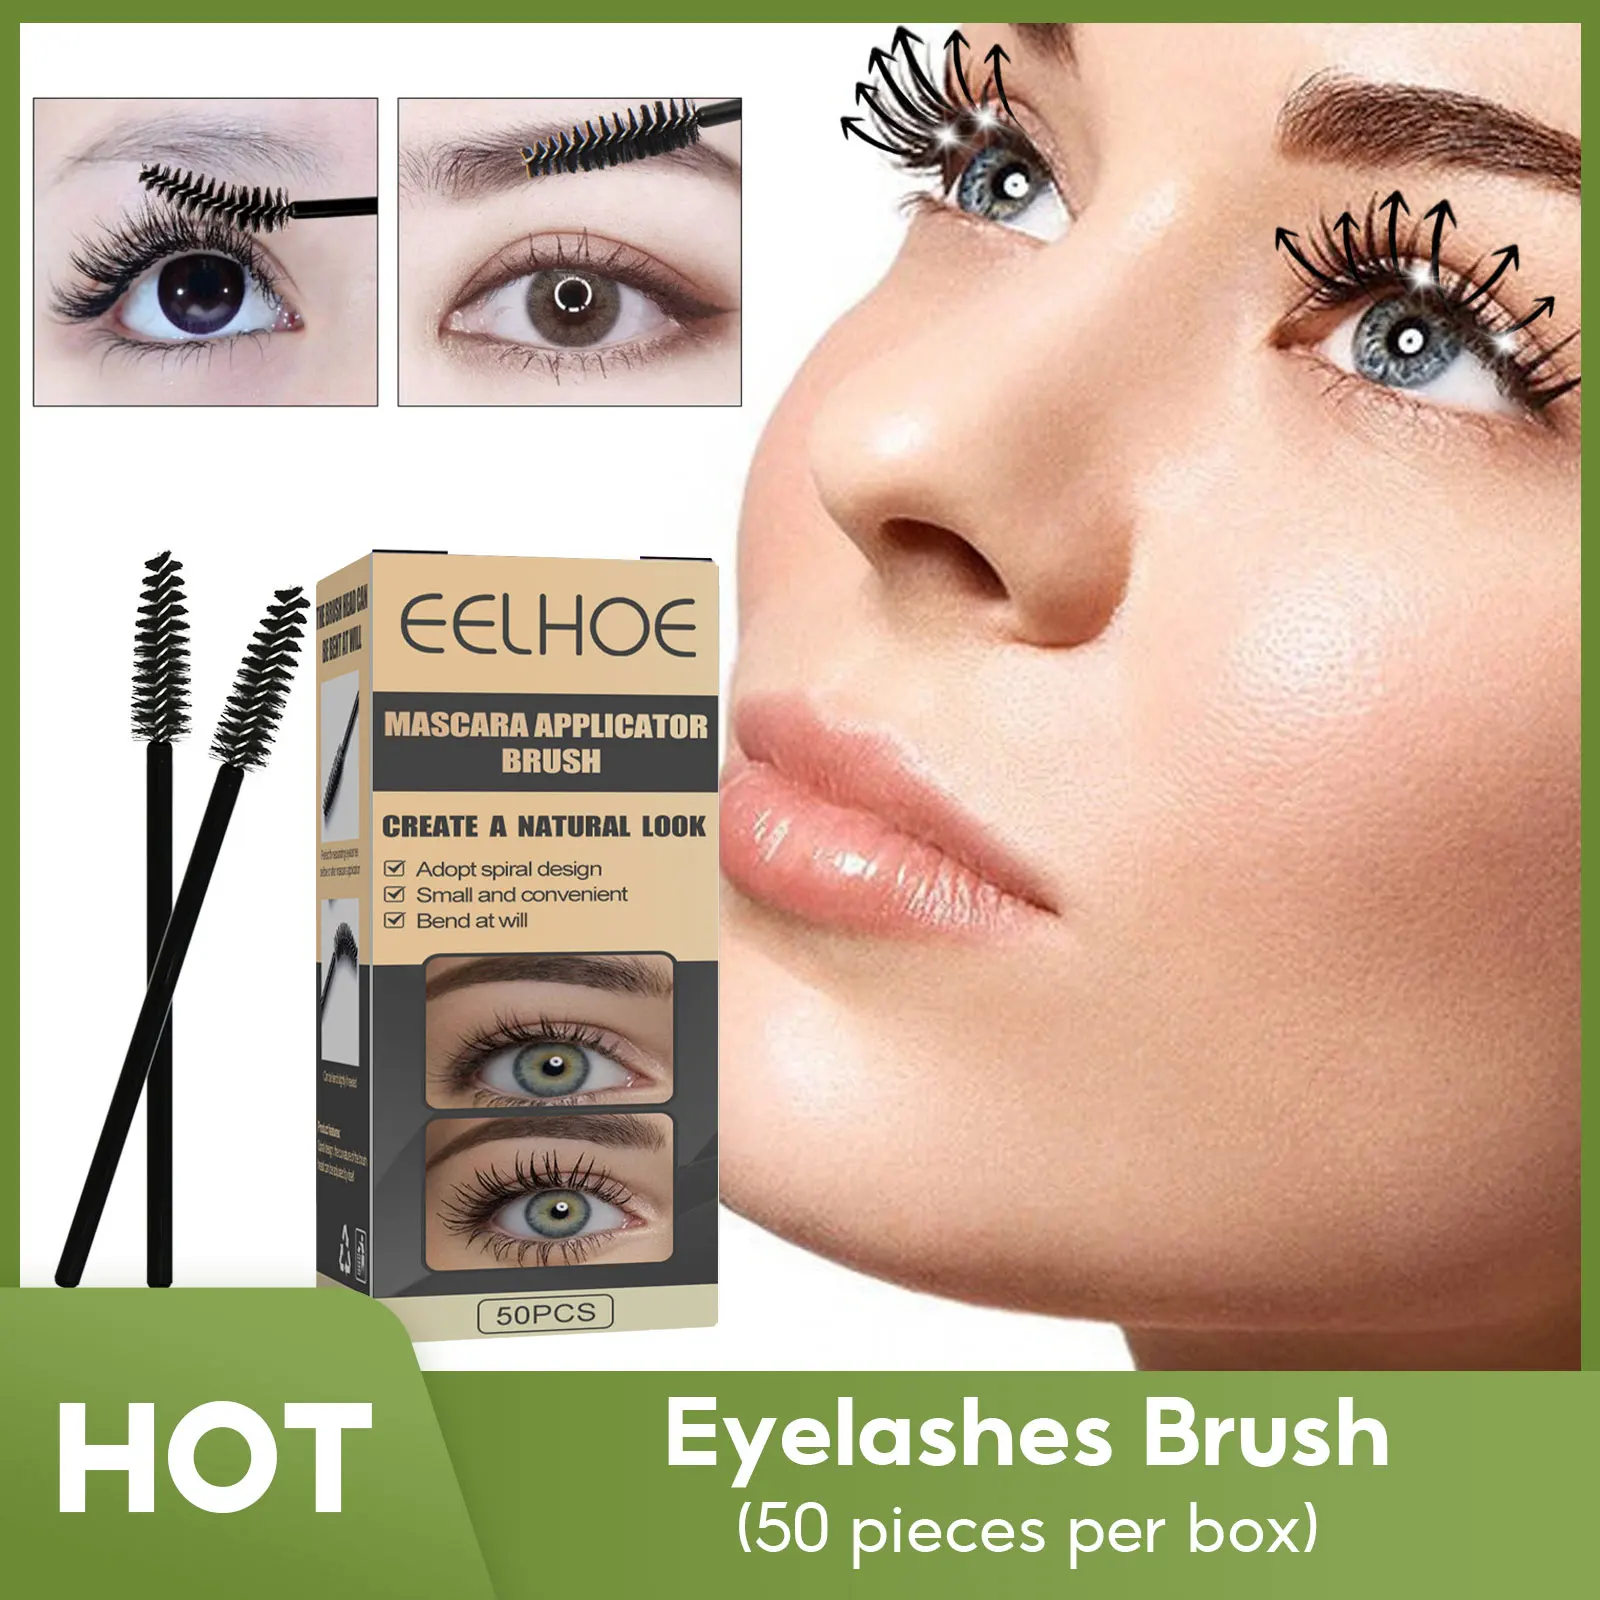 

Eyelashes Makeup Brush Eyebrow Brush Mascara Wands Eyelash Extension Tool Supplies Lash Brushes Applicator Spoolers Eyelashes